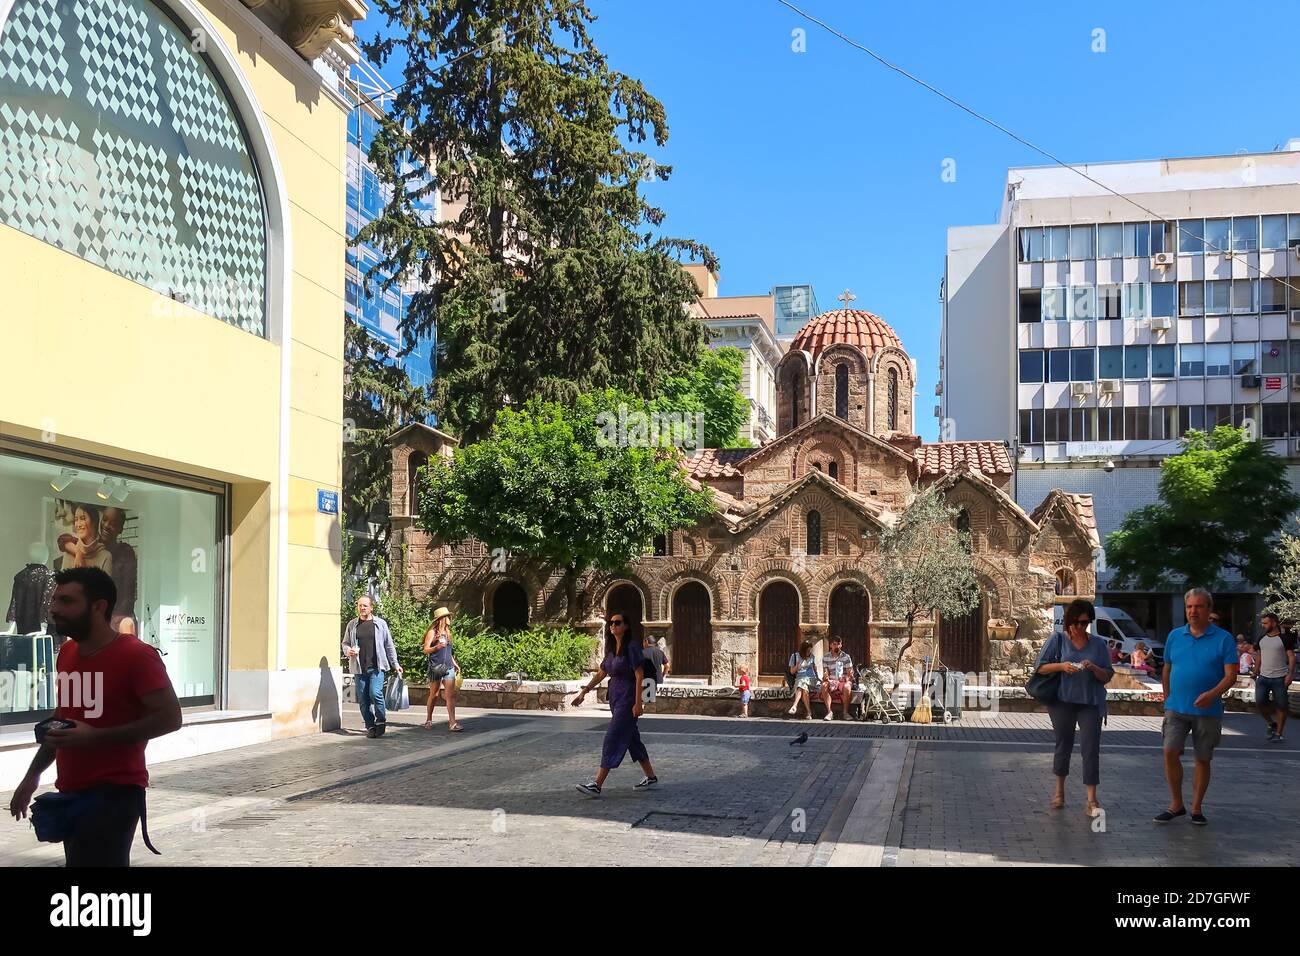 La Chiesa di Panagia Kapnikarea, la chiesa più antica di Atene, situata nel quartiere dello shopping in via Ermou. Foto Stock